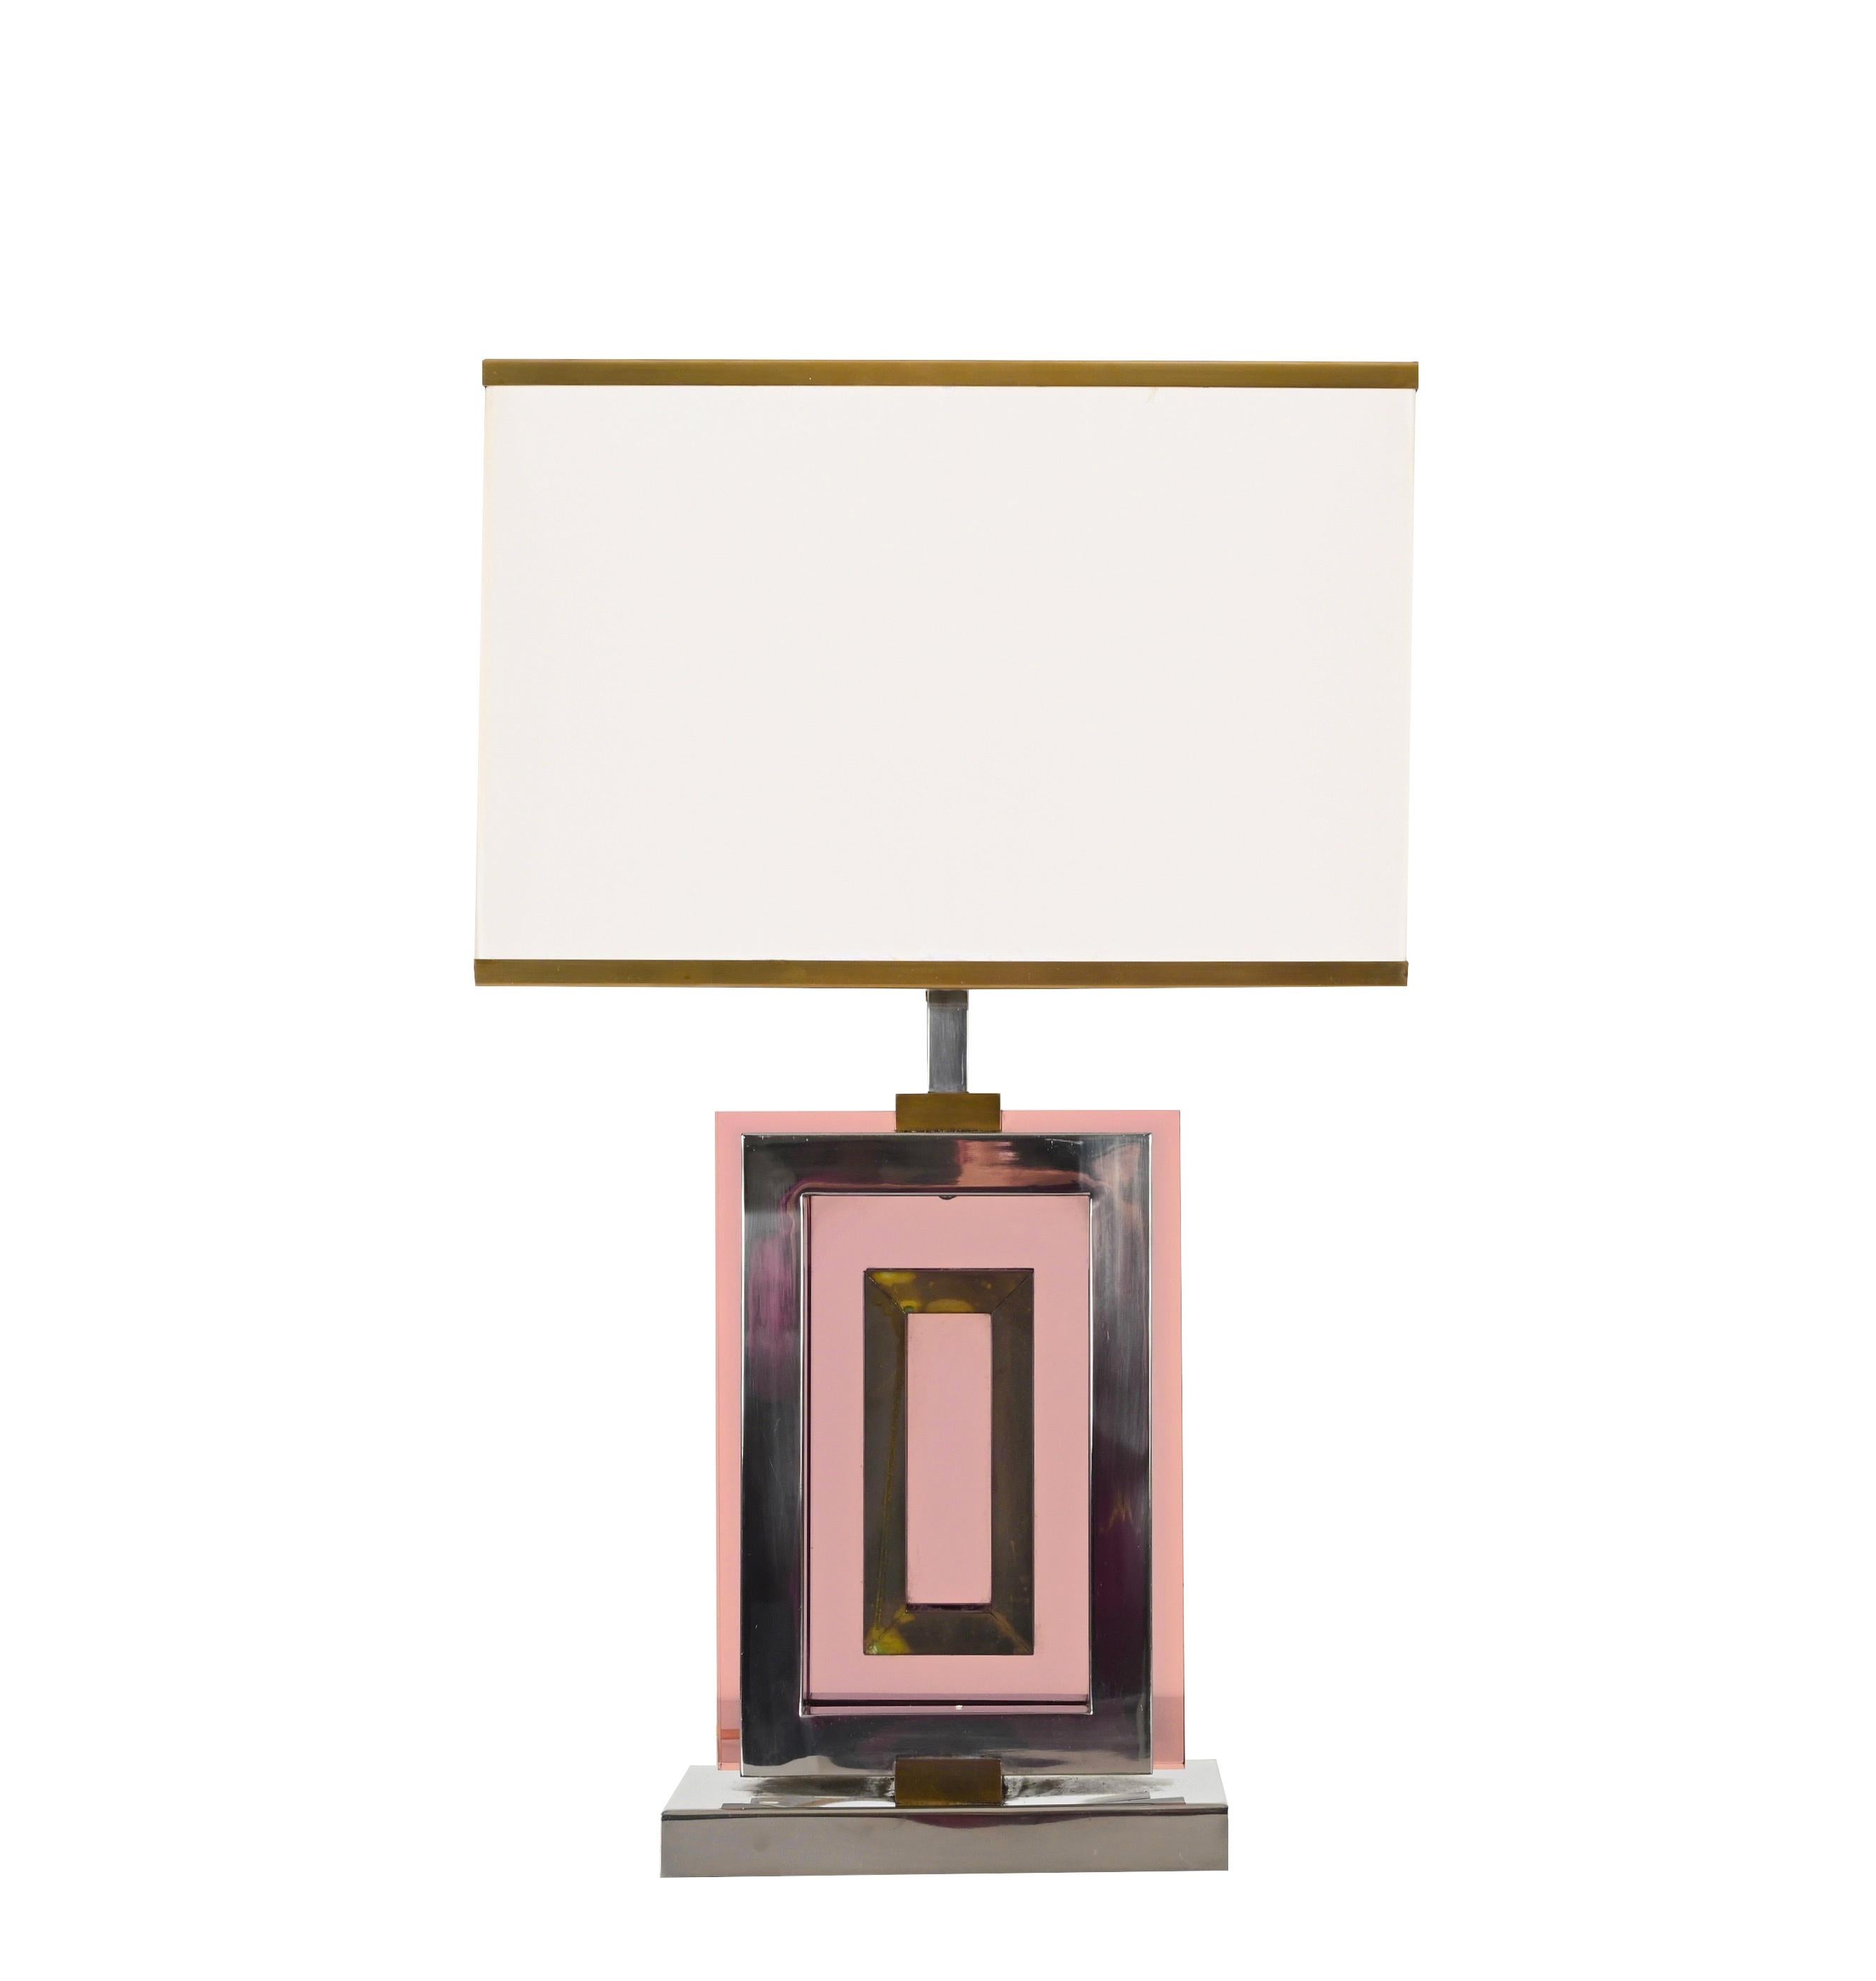 Étonnante lampe de table conçue par le designer romain Romeo Rega dans les années 70. Les matériaux utilisés sont le laiton chromé, le laiton doré et le perpex de couleur améthyste. 
La structure de cette lampe est incroyablement élégante avec une